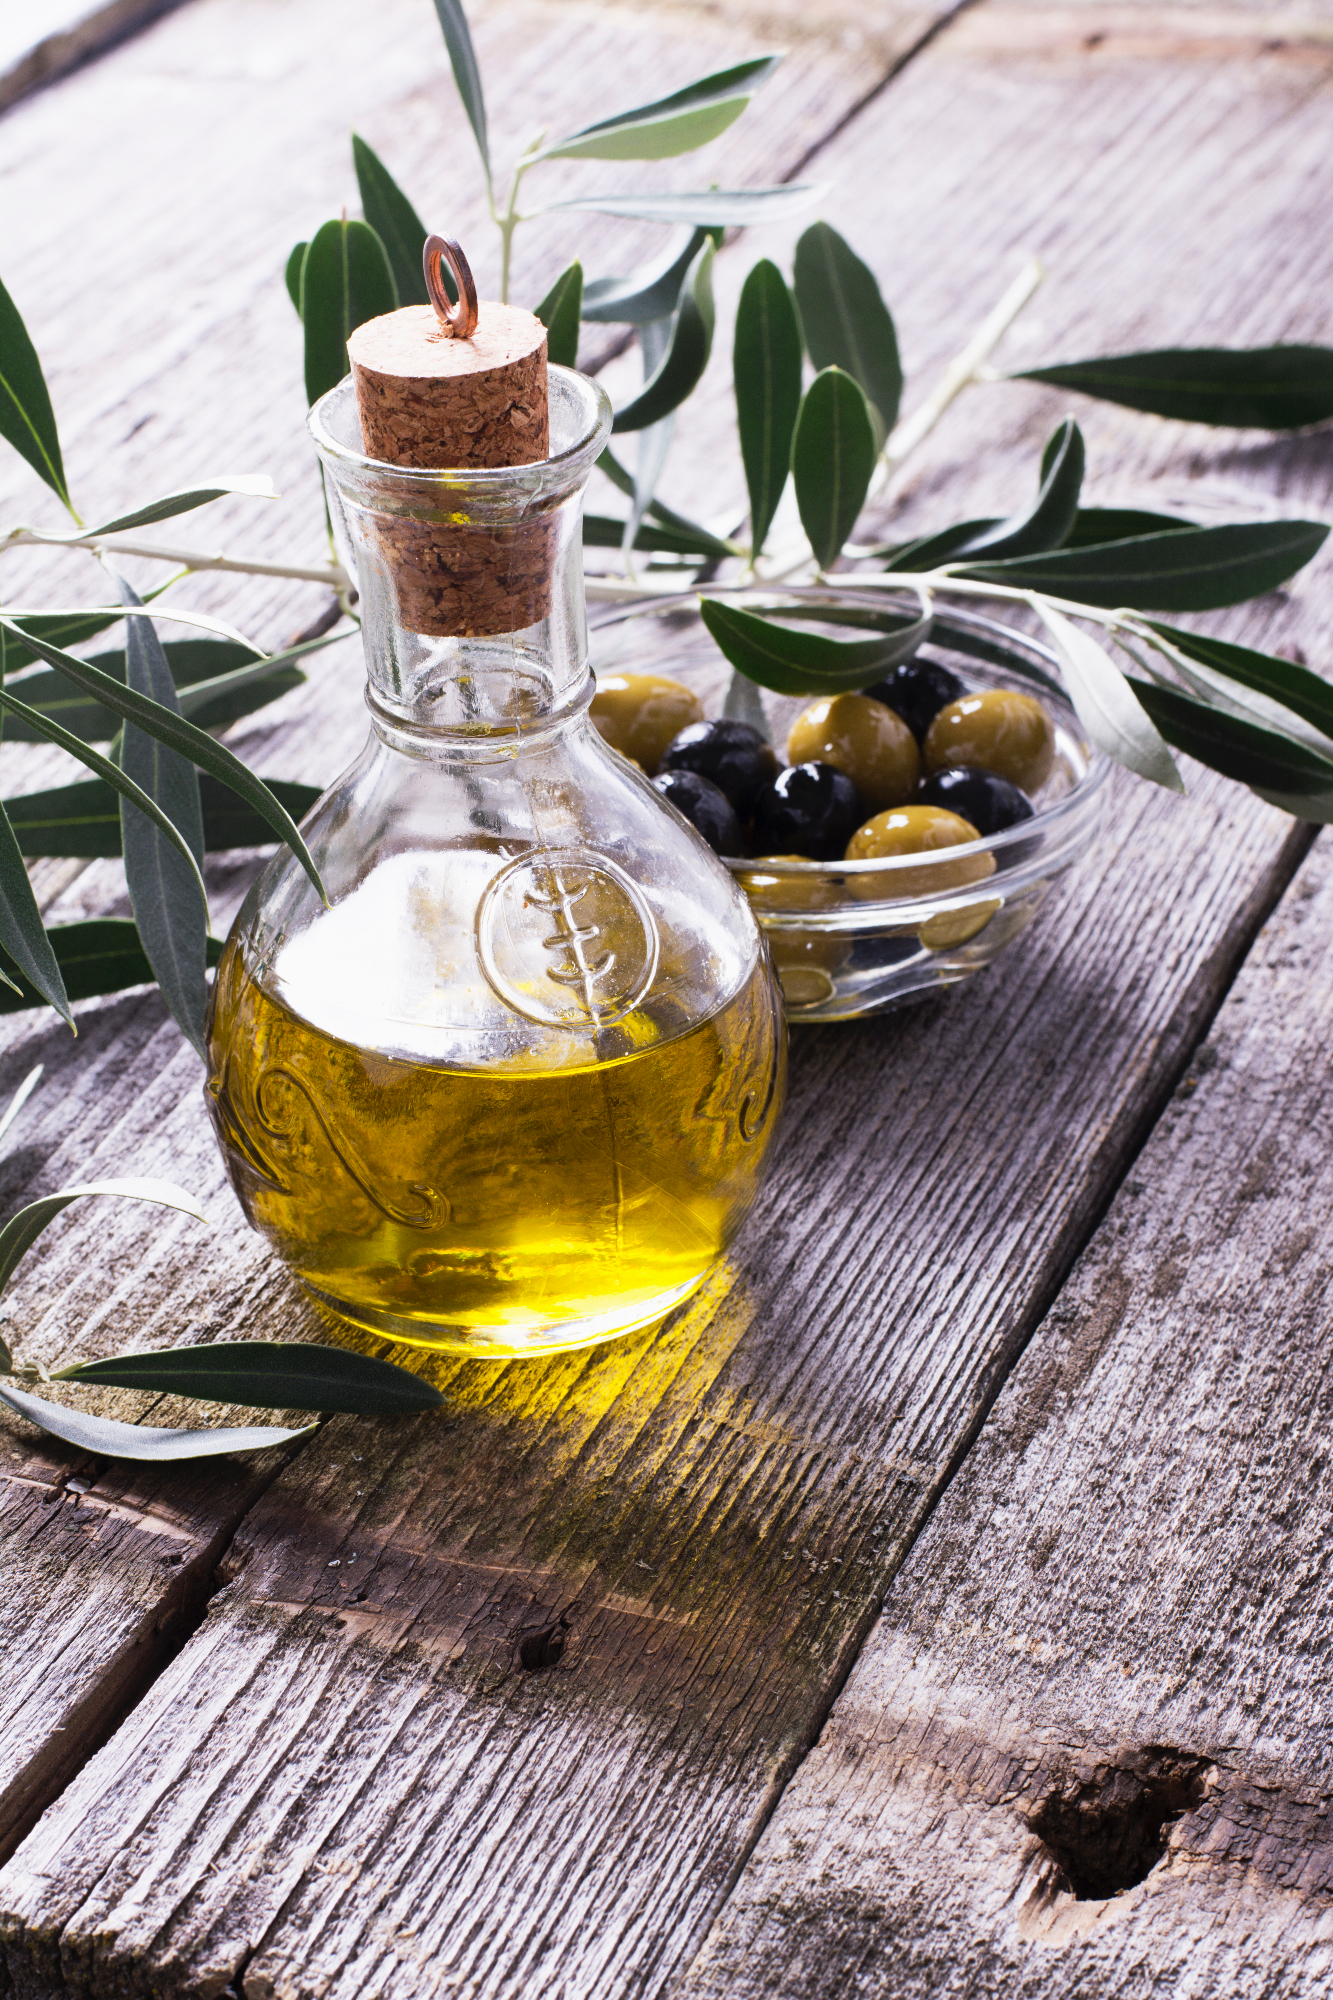 Oljarna Lisjak nam je nudila izvrstno olivno olje